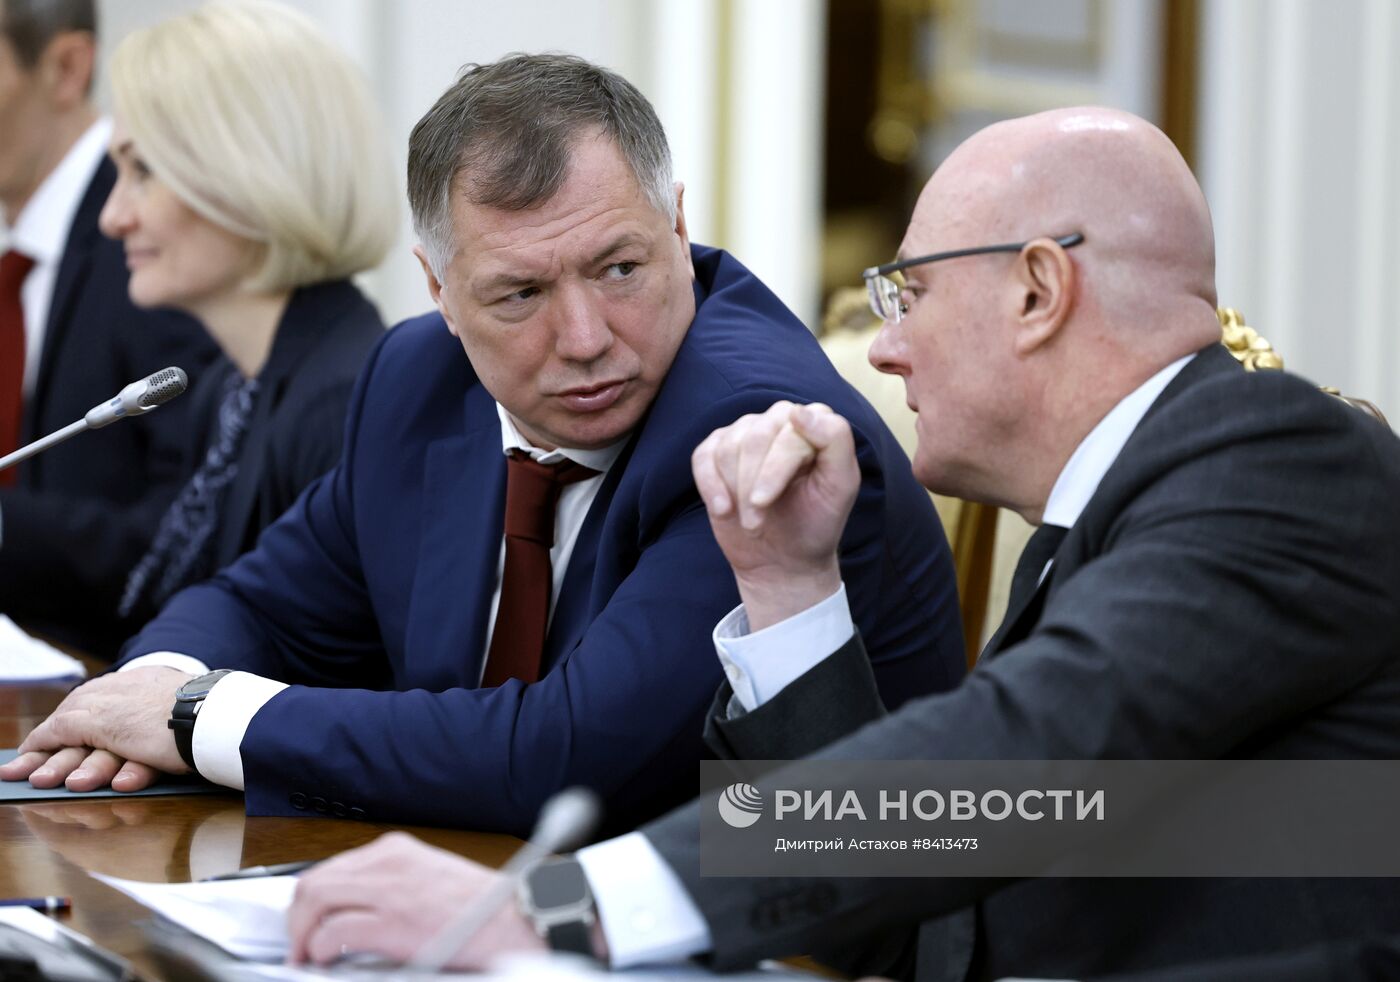  Премьер-министр РФ М. Мишустин провел совещание с вице-премьерами РФ